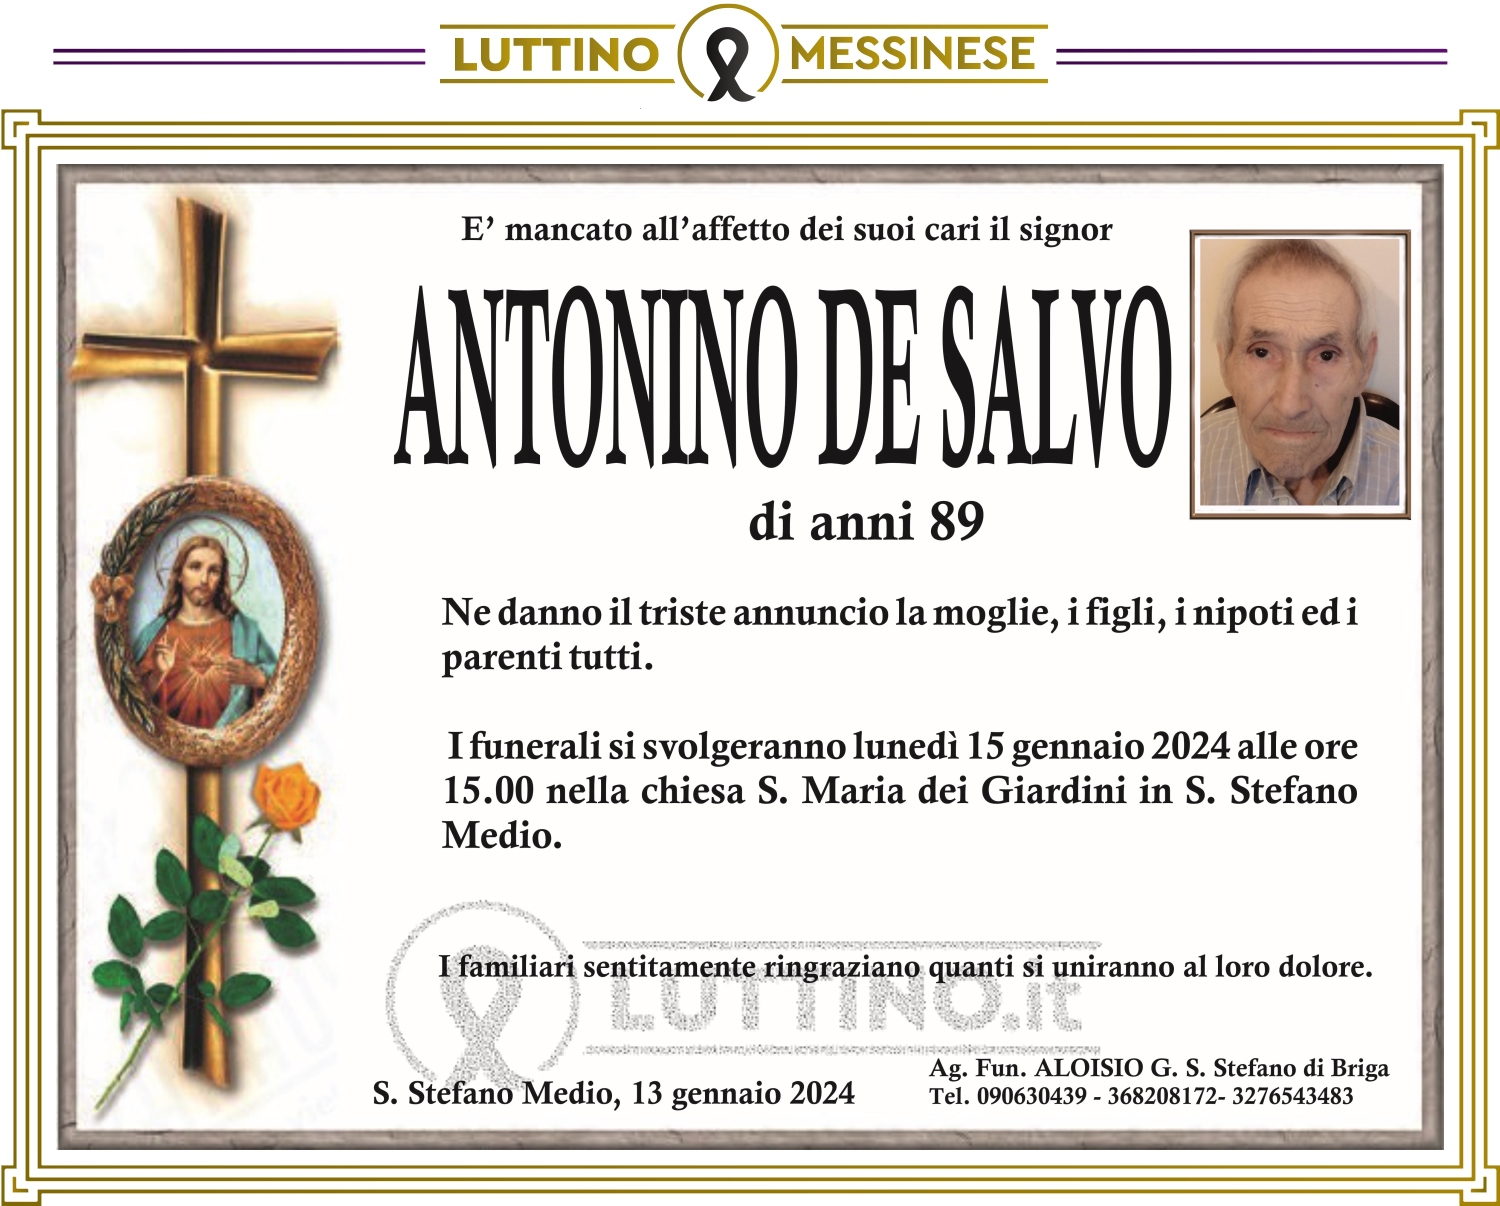 Antonino De Salvo